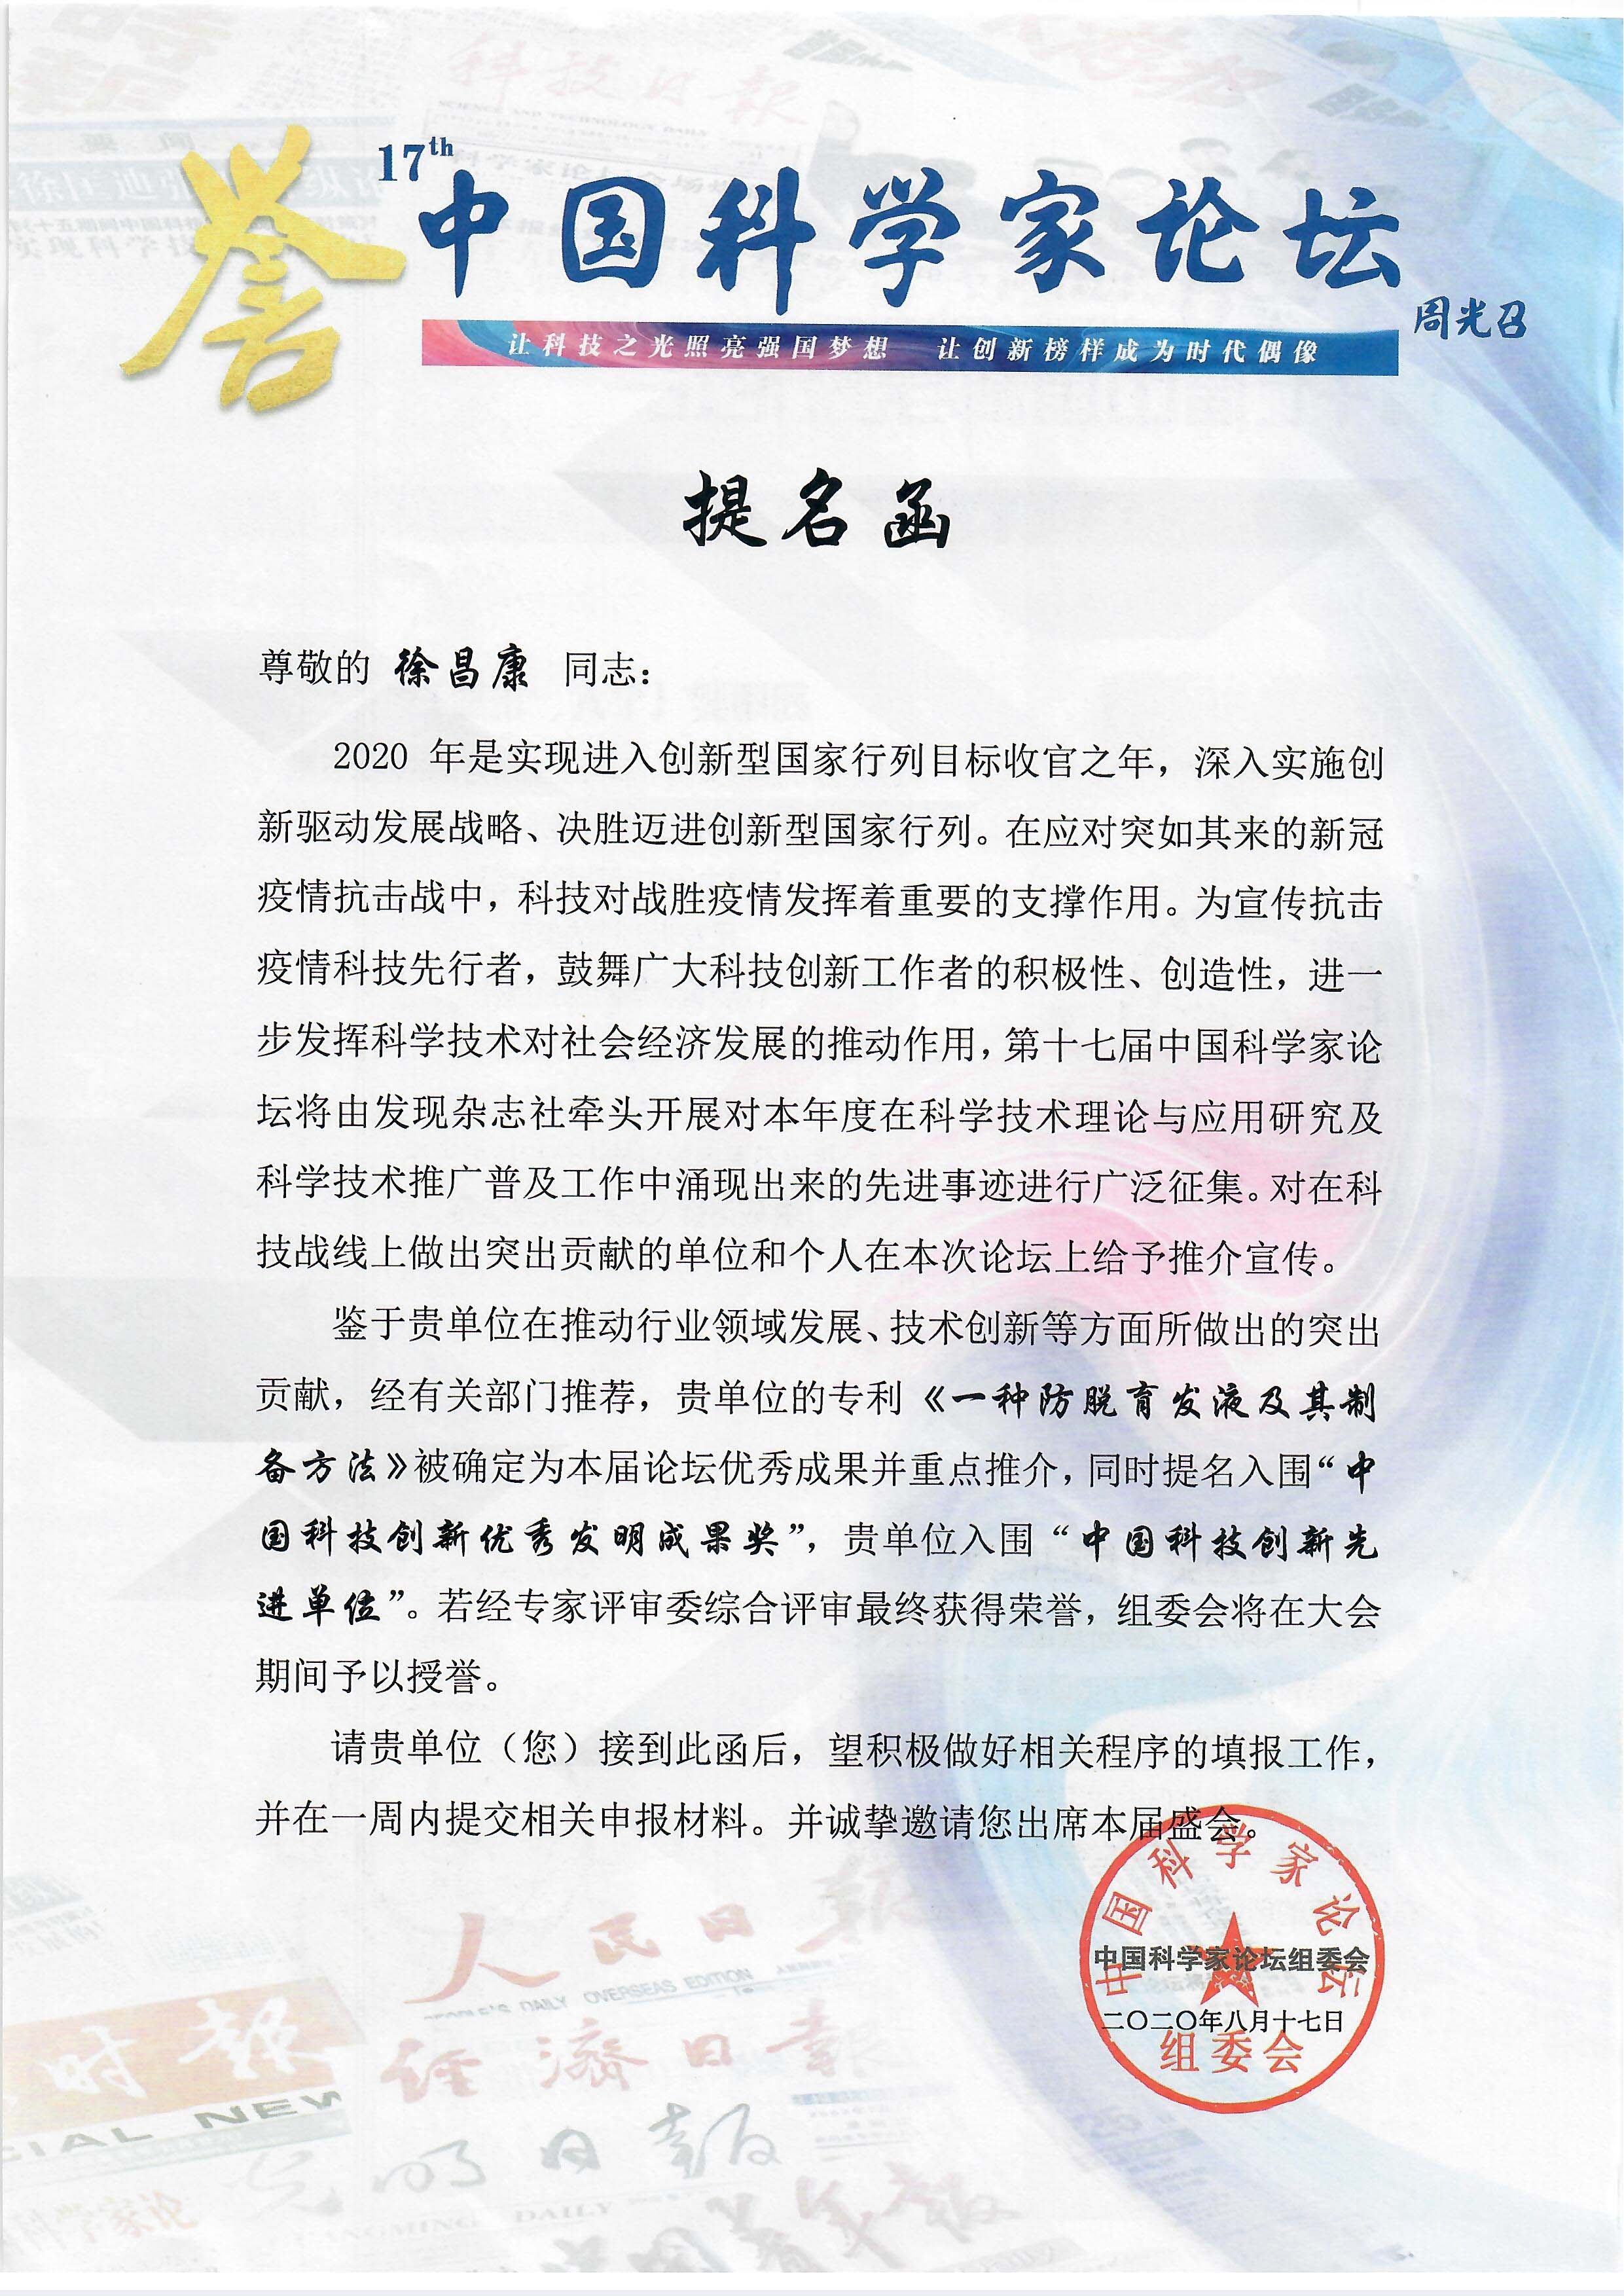 只做产品，不做概念，天仁科技创始人受邀参加第十七届中国家论坛